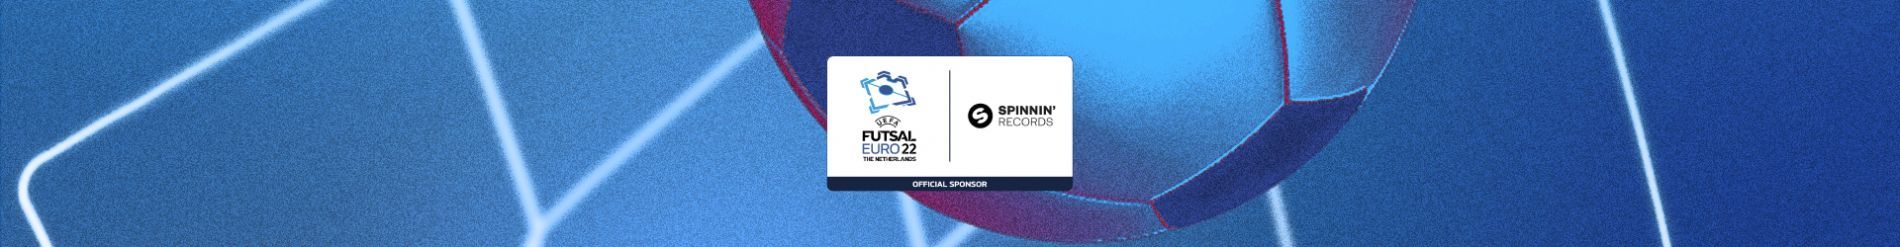 UEFA FUTSAL EURO 2022 GOALTUNE CONTEST